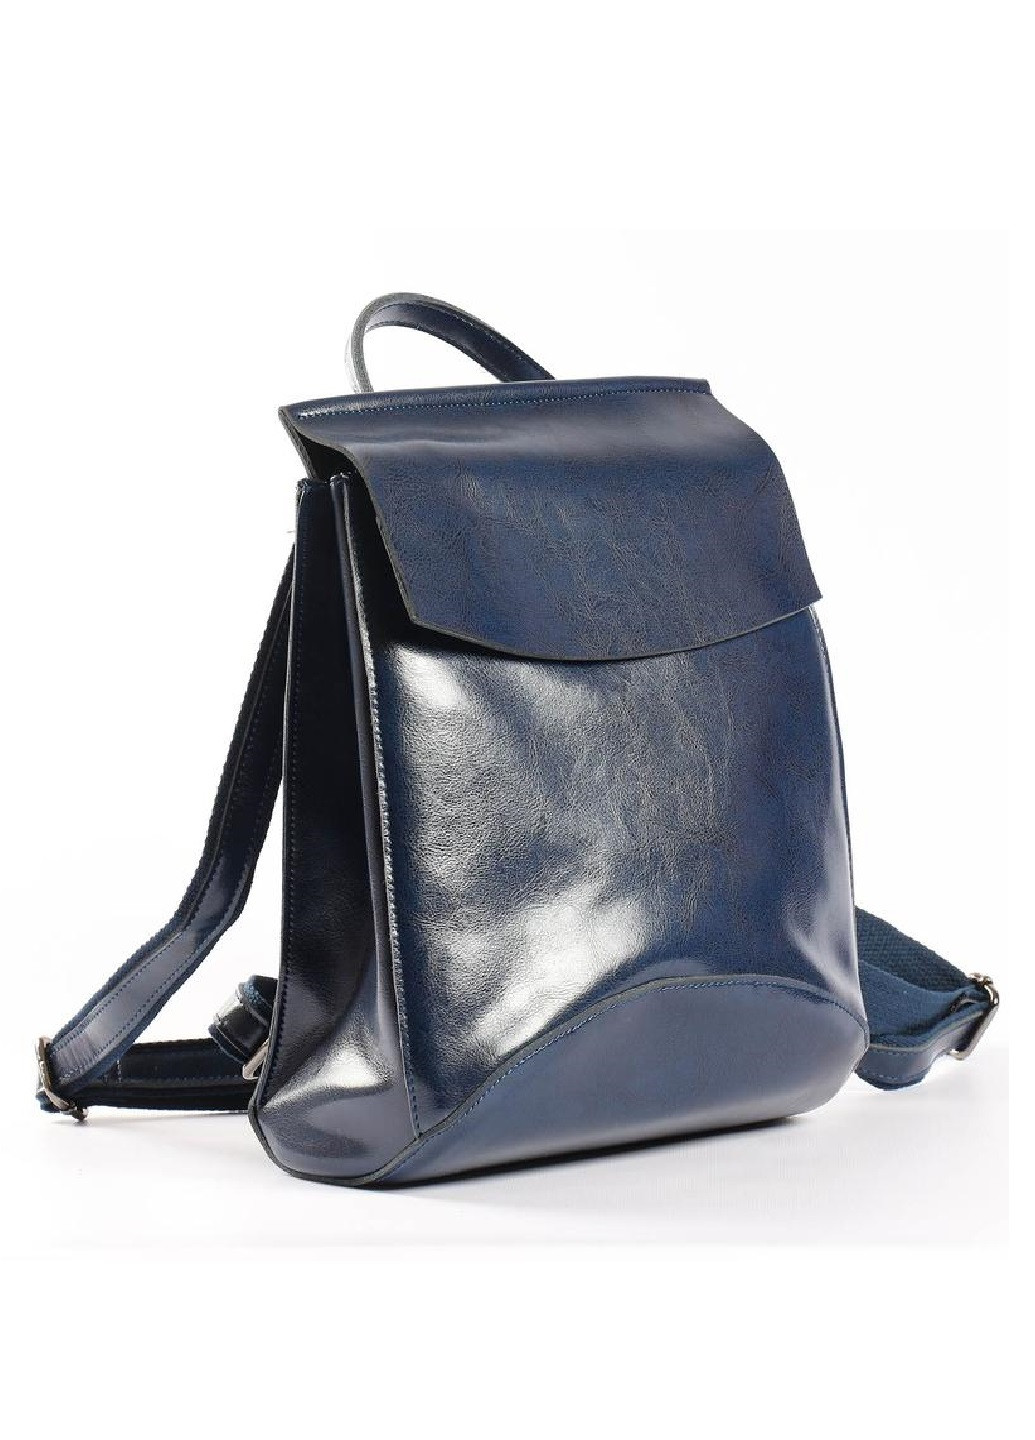 Кожаный рюкзак-сумка Vishnya (256507742)